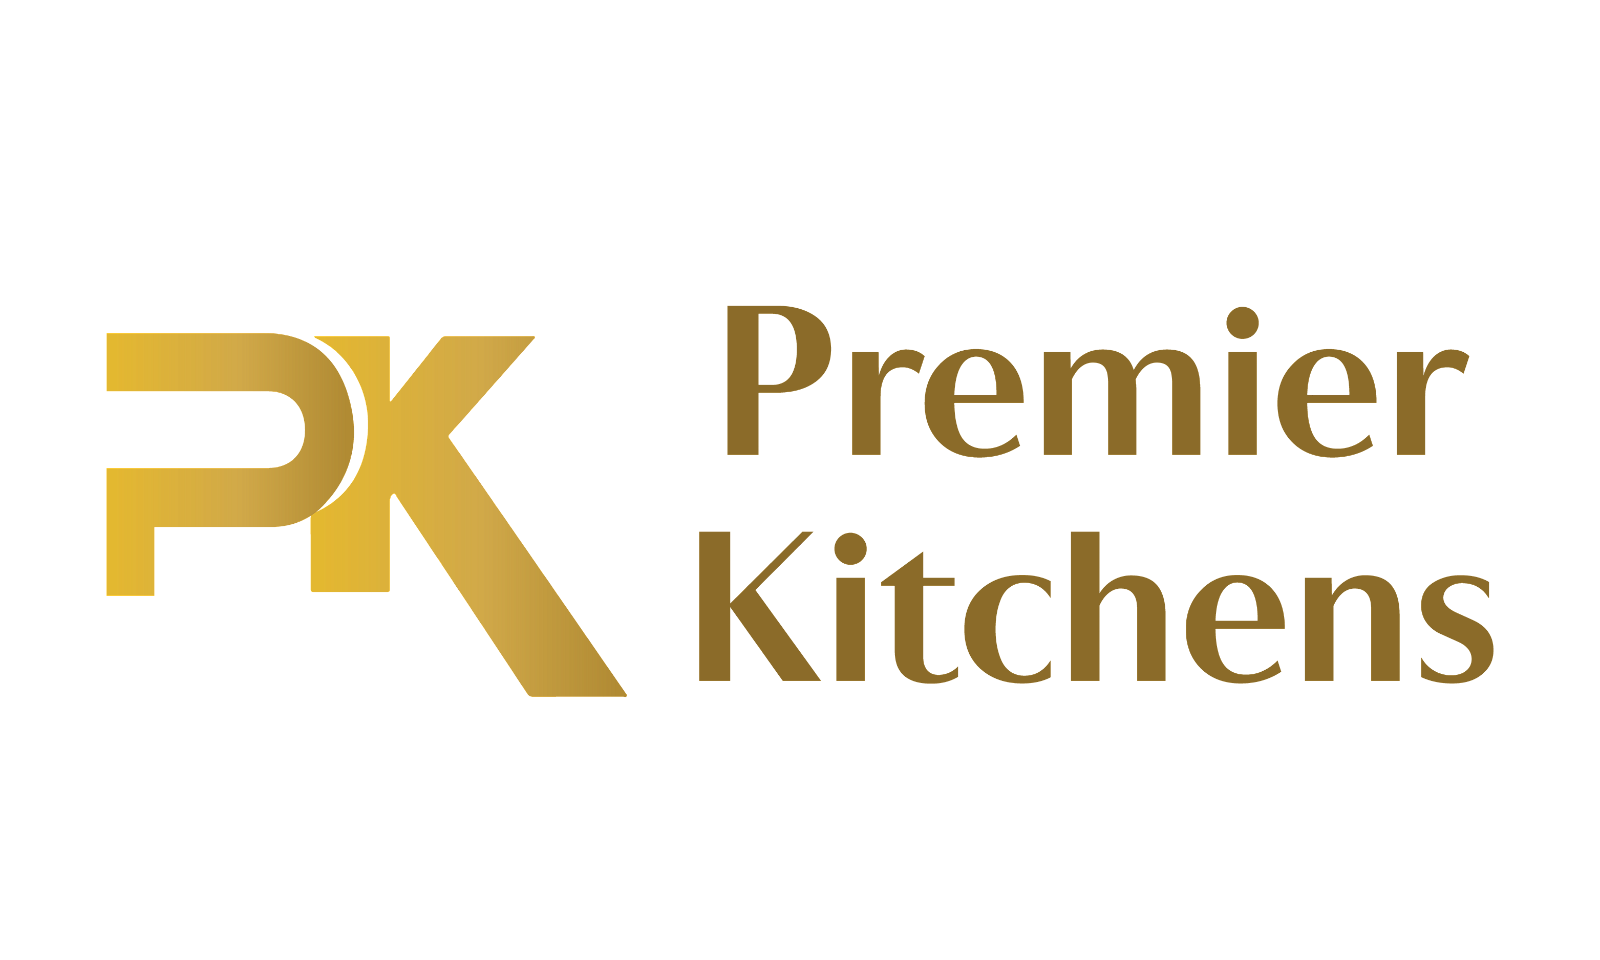 PremierKitchens.com - Creative brandable domain for sale